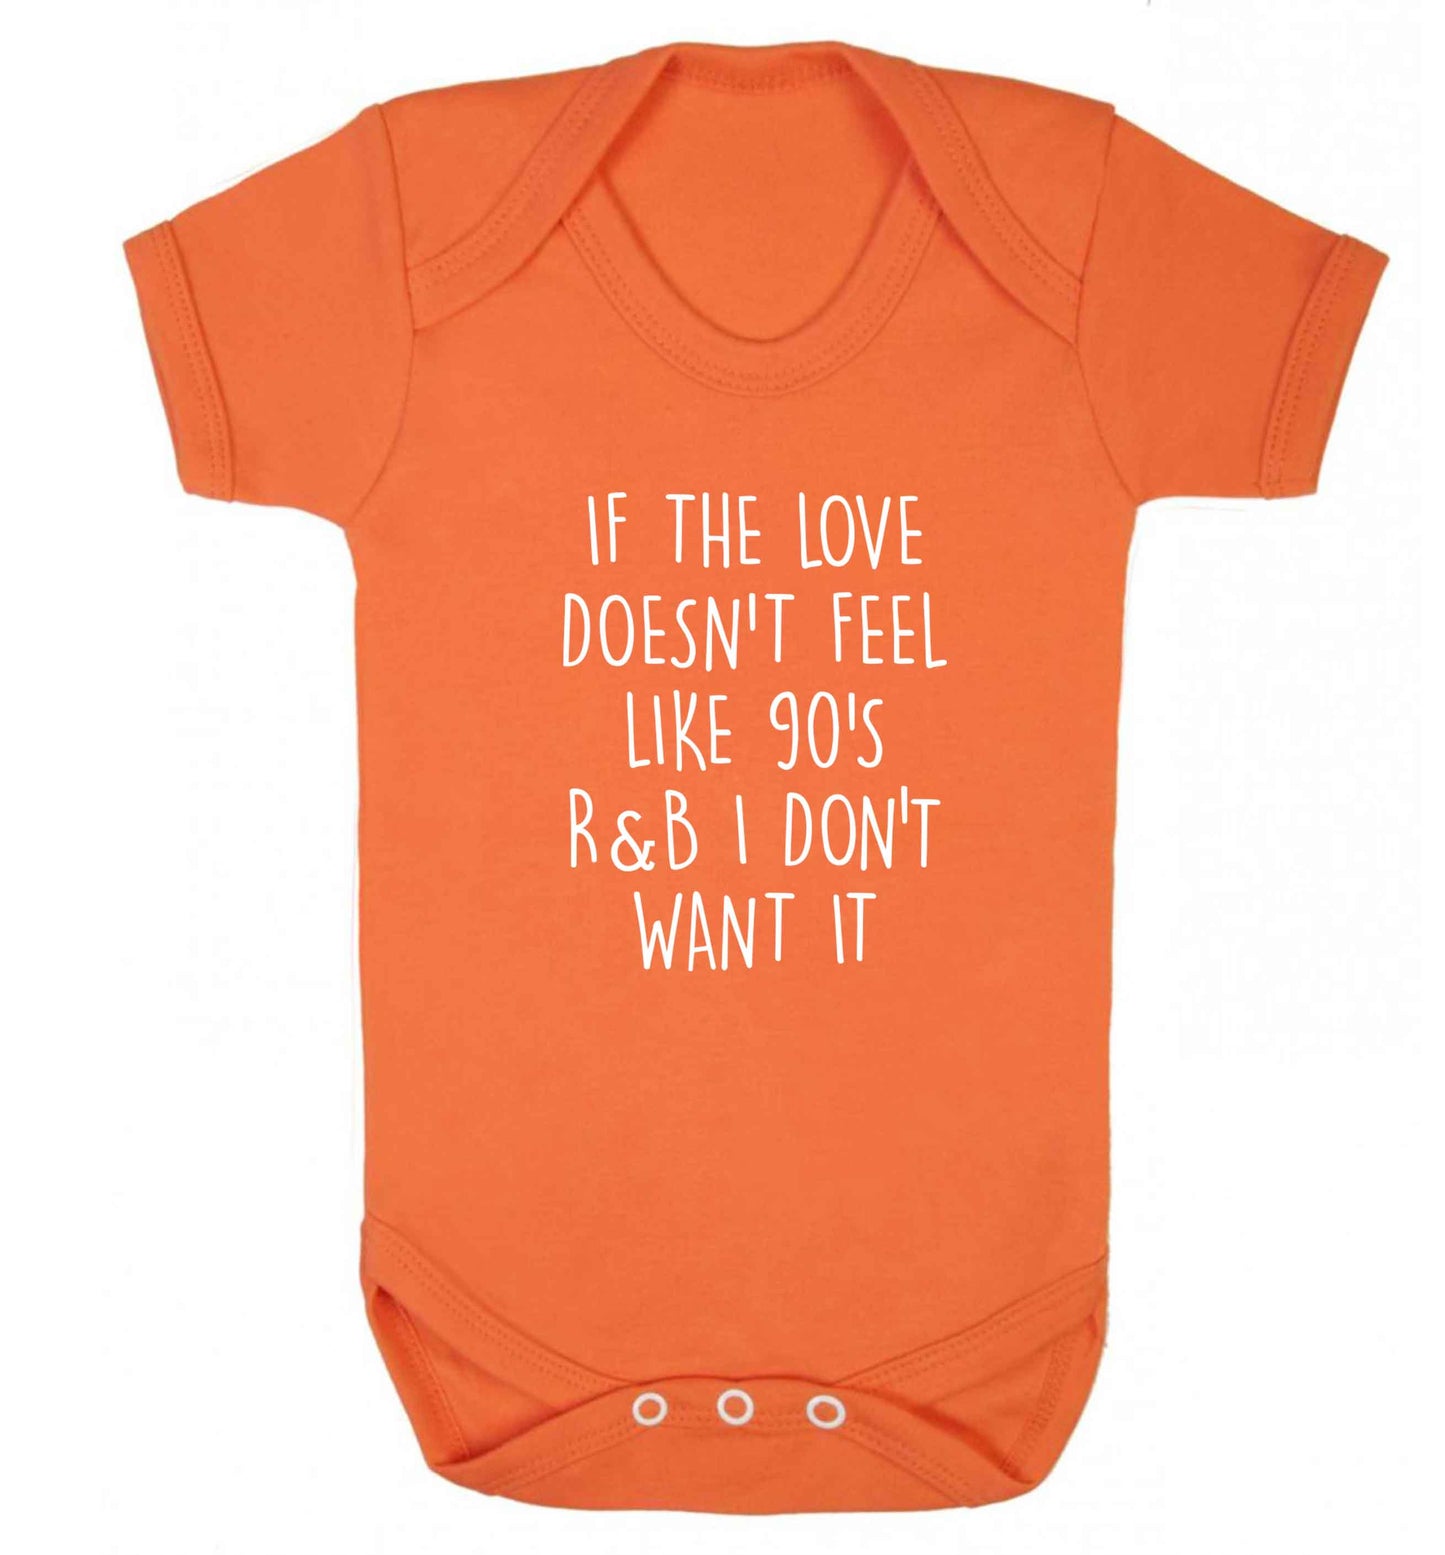 If the love doesn't feel like 90's r&b I don't want it baby vest orange 18-24 months